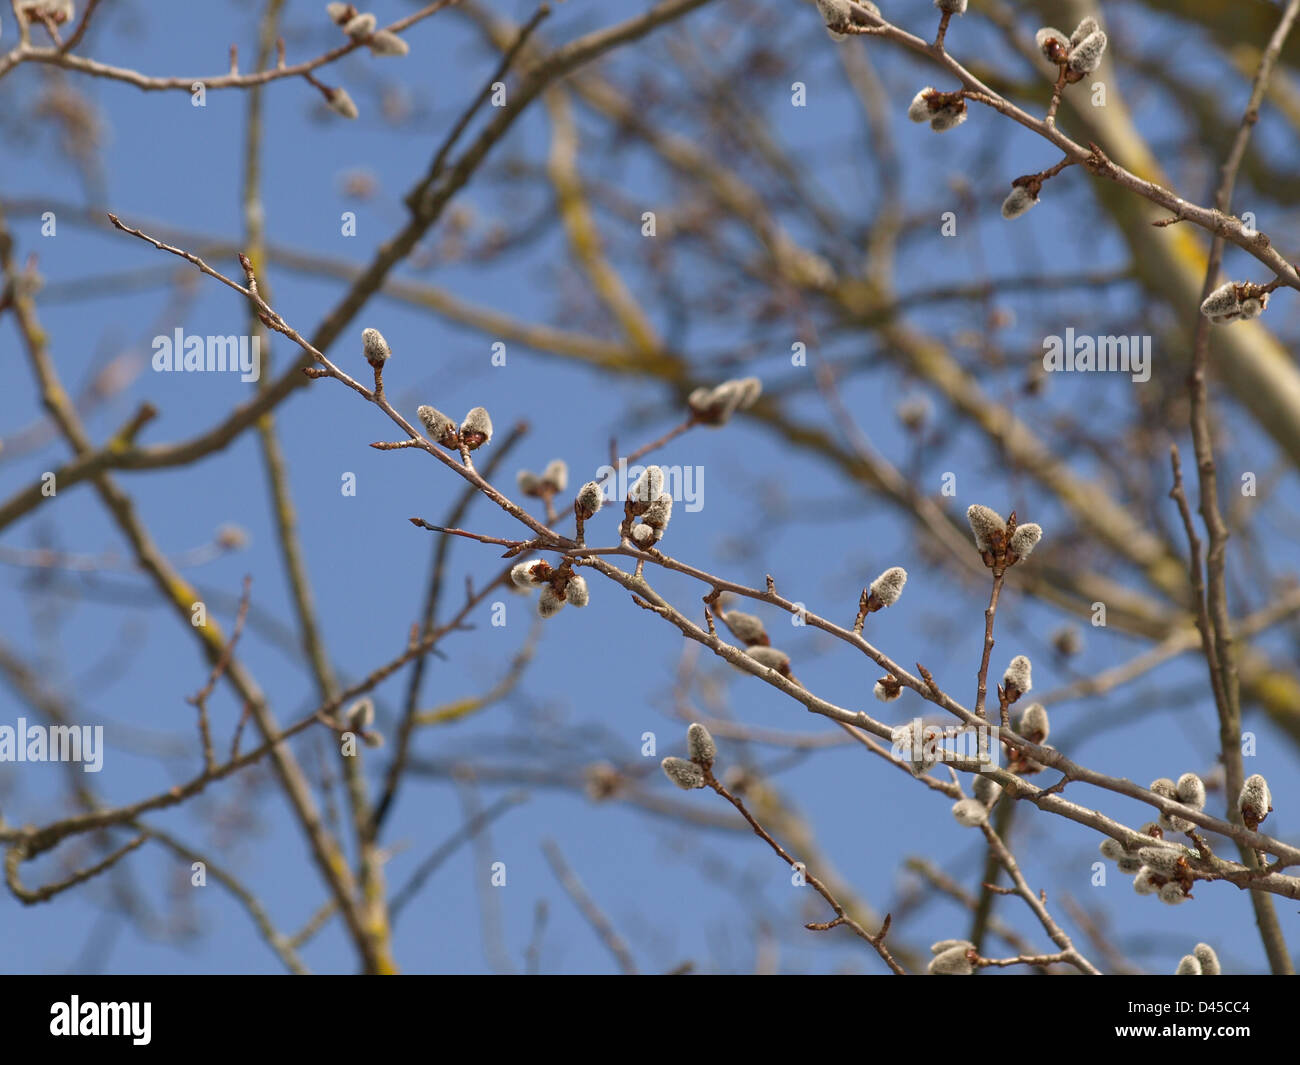 willow catkins in spring / Salix / Weiden Kätzchen im Frühling Stock Photo